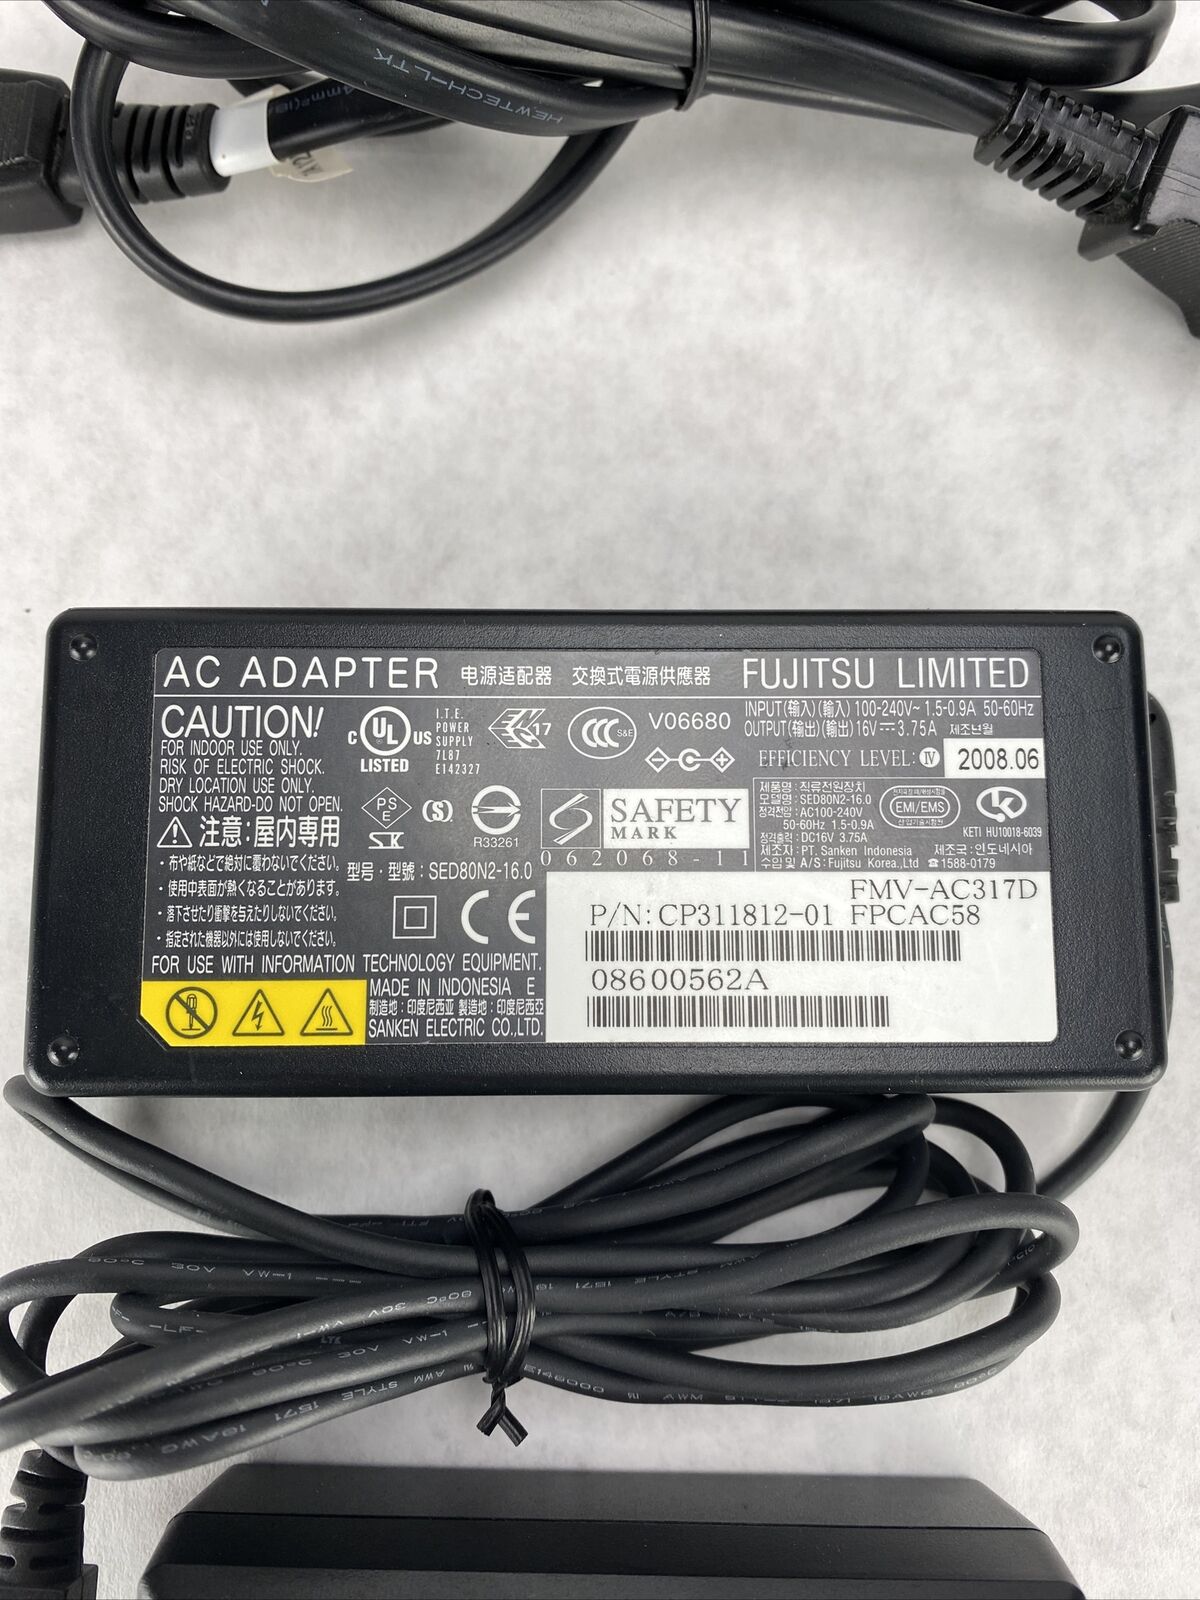 Fujitsu OEM Battery Charger AC Adapter for Fujitsu Stylistic Q550 Q552 Q572